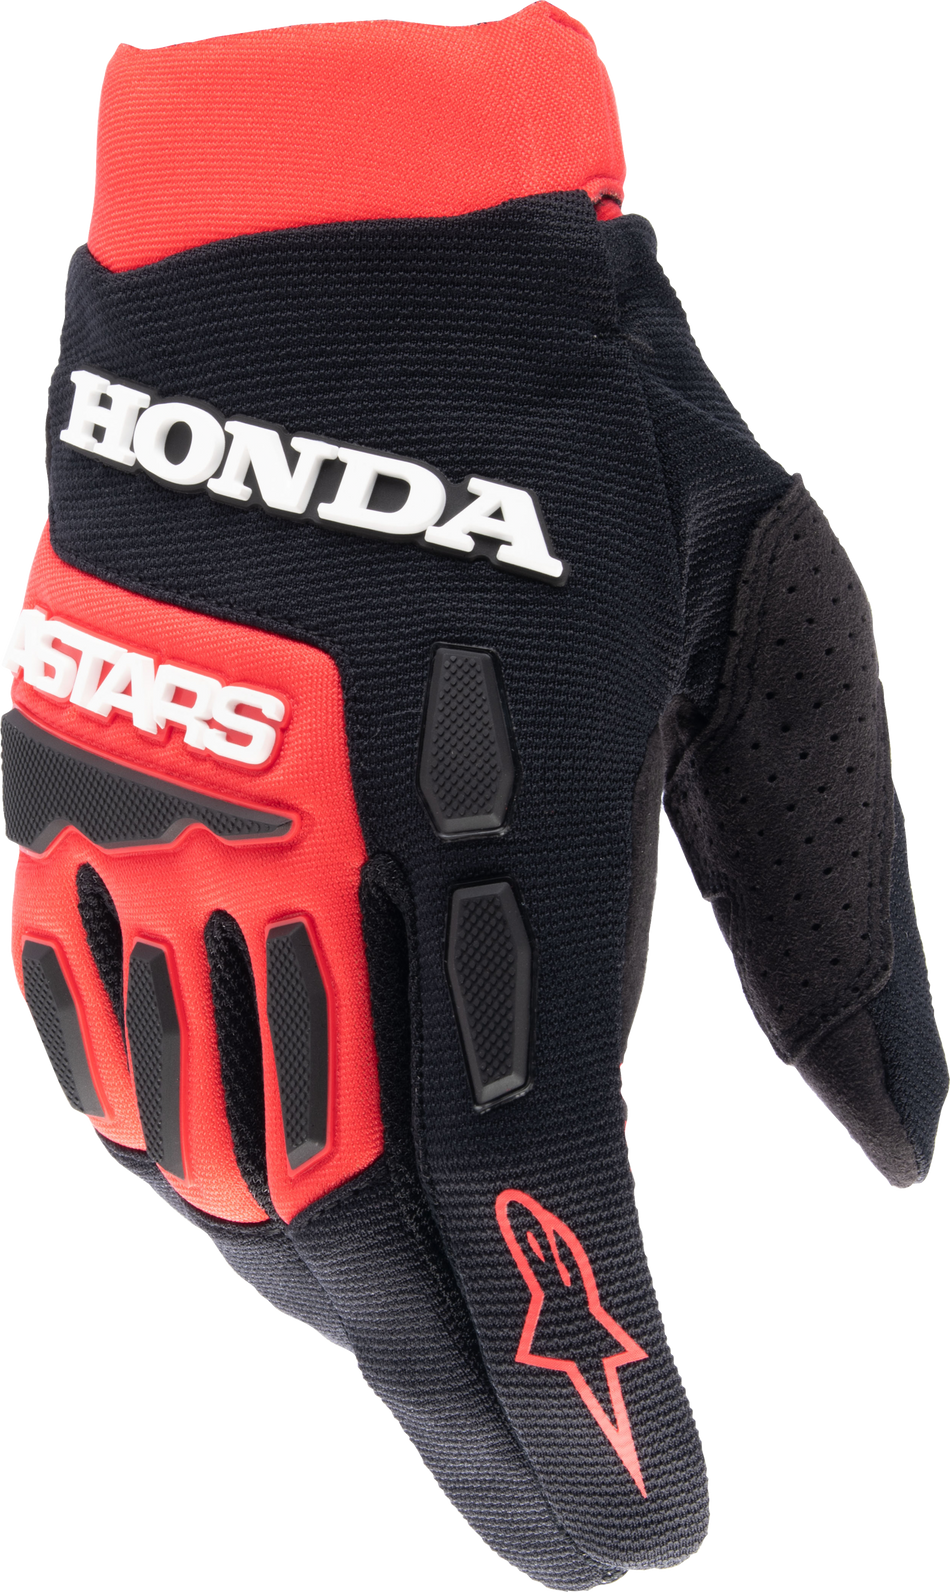 ALPINESTARS Honda Full Bore Gloves Bright Red/Black Lg 3563823-3031-L